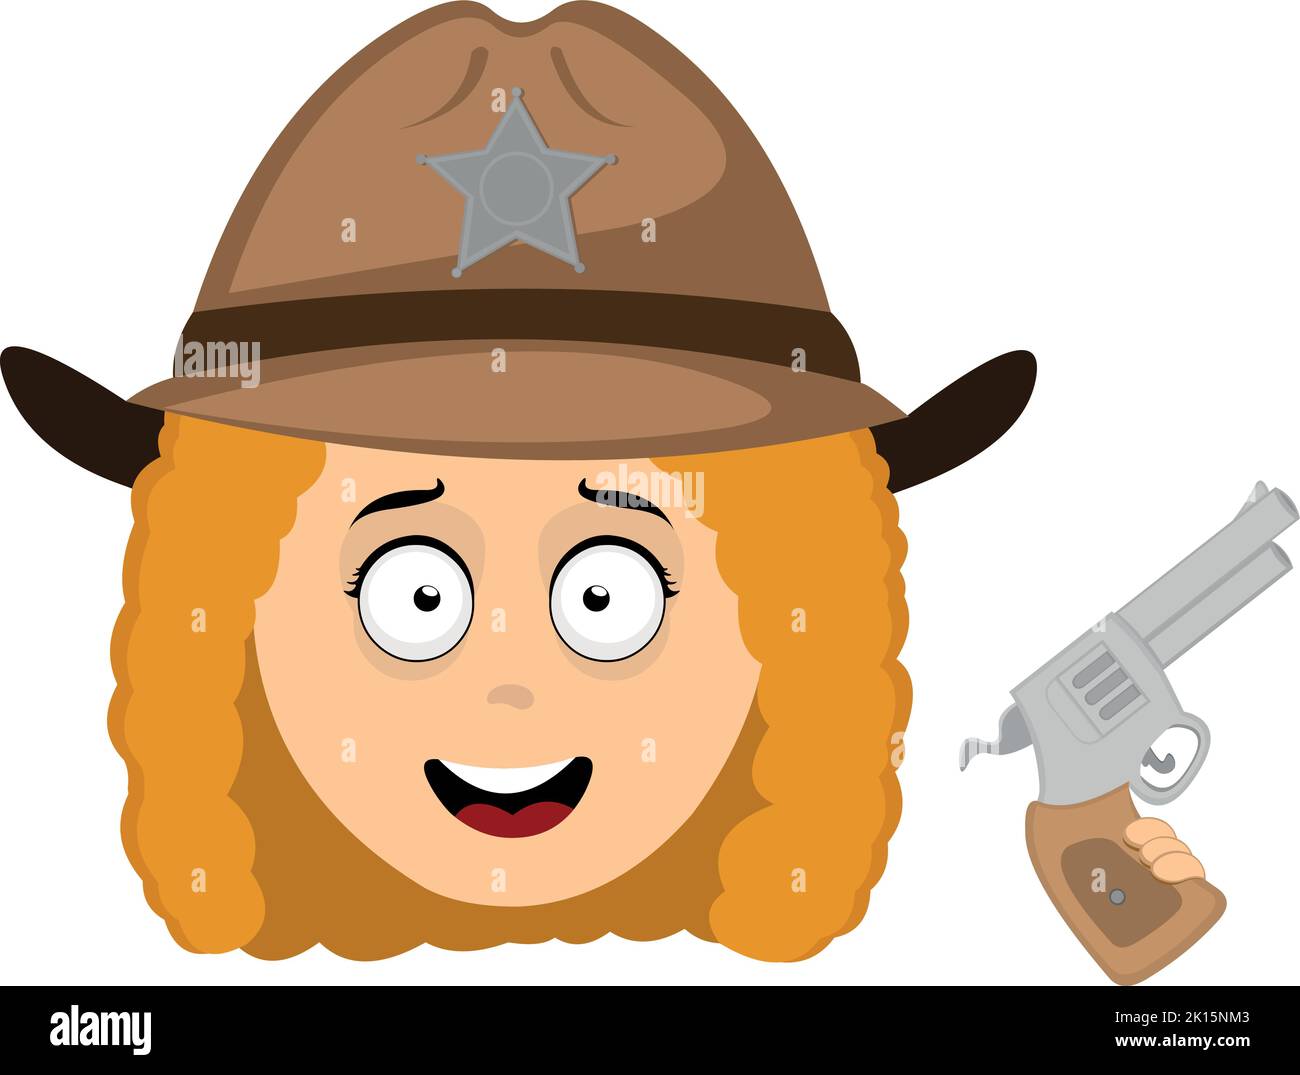 Vecteur émoticône illustration du visage d'une femme shérif de bande dessinée avec un chapeau et un fusil dans sa main Illustration de Vecteur